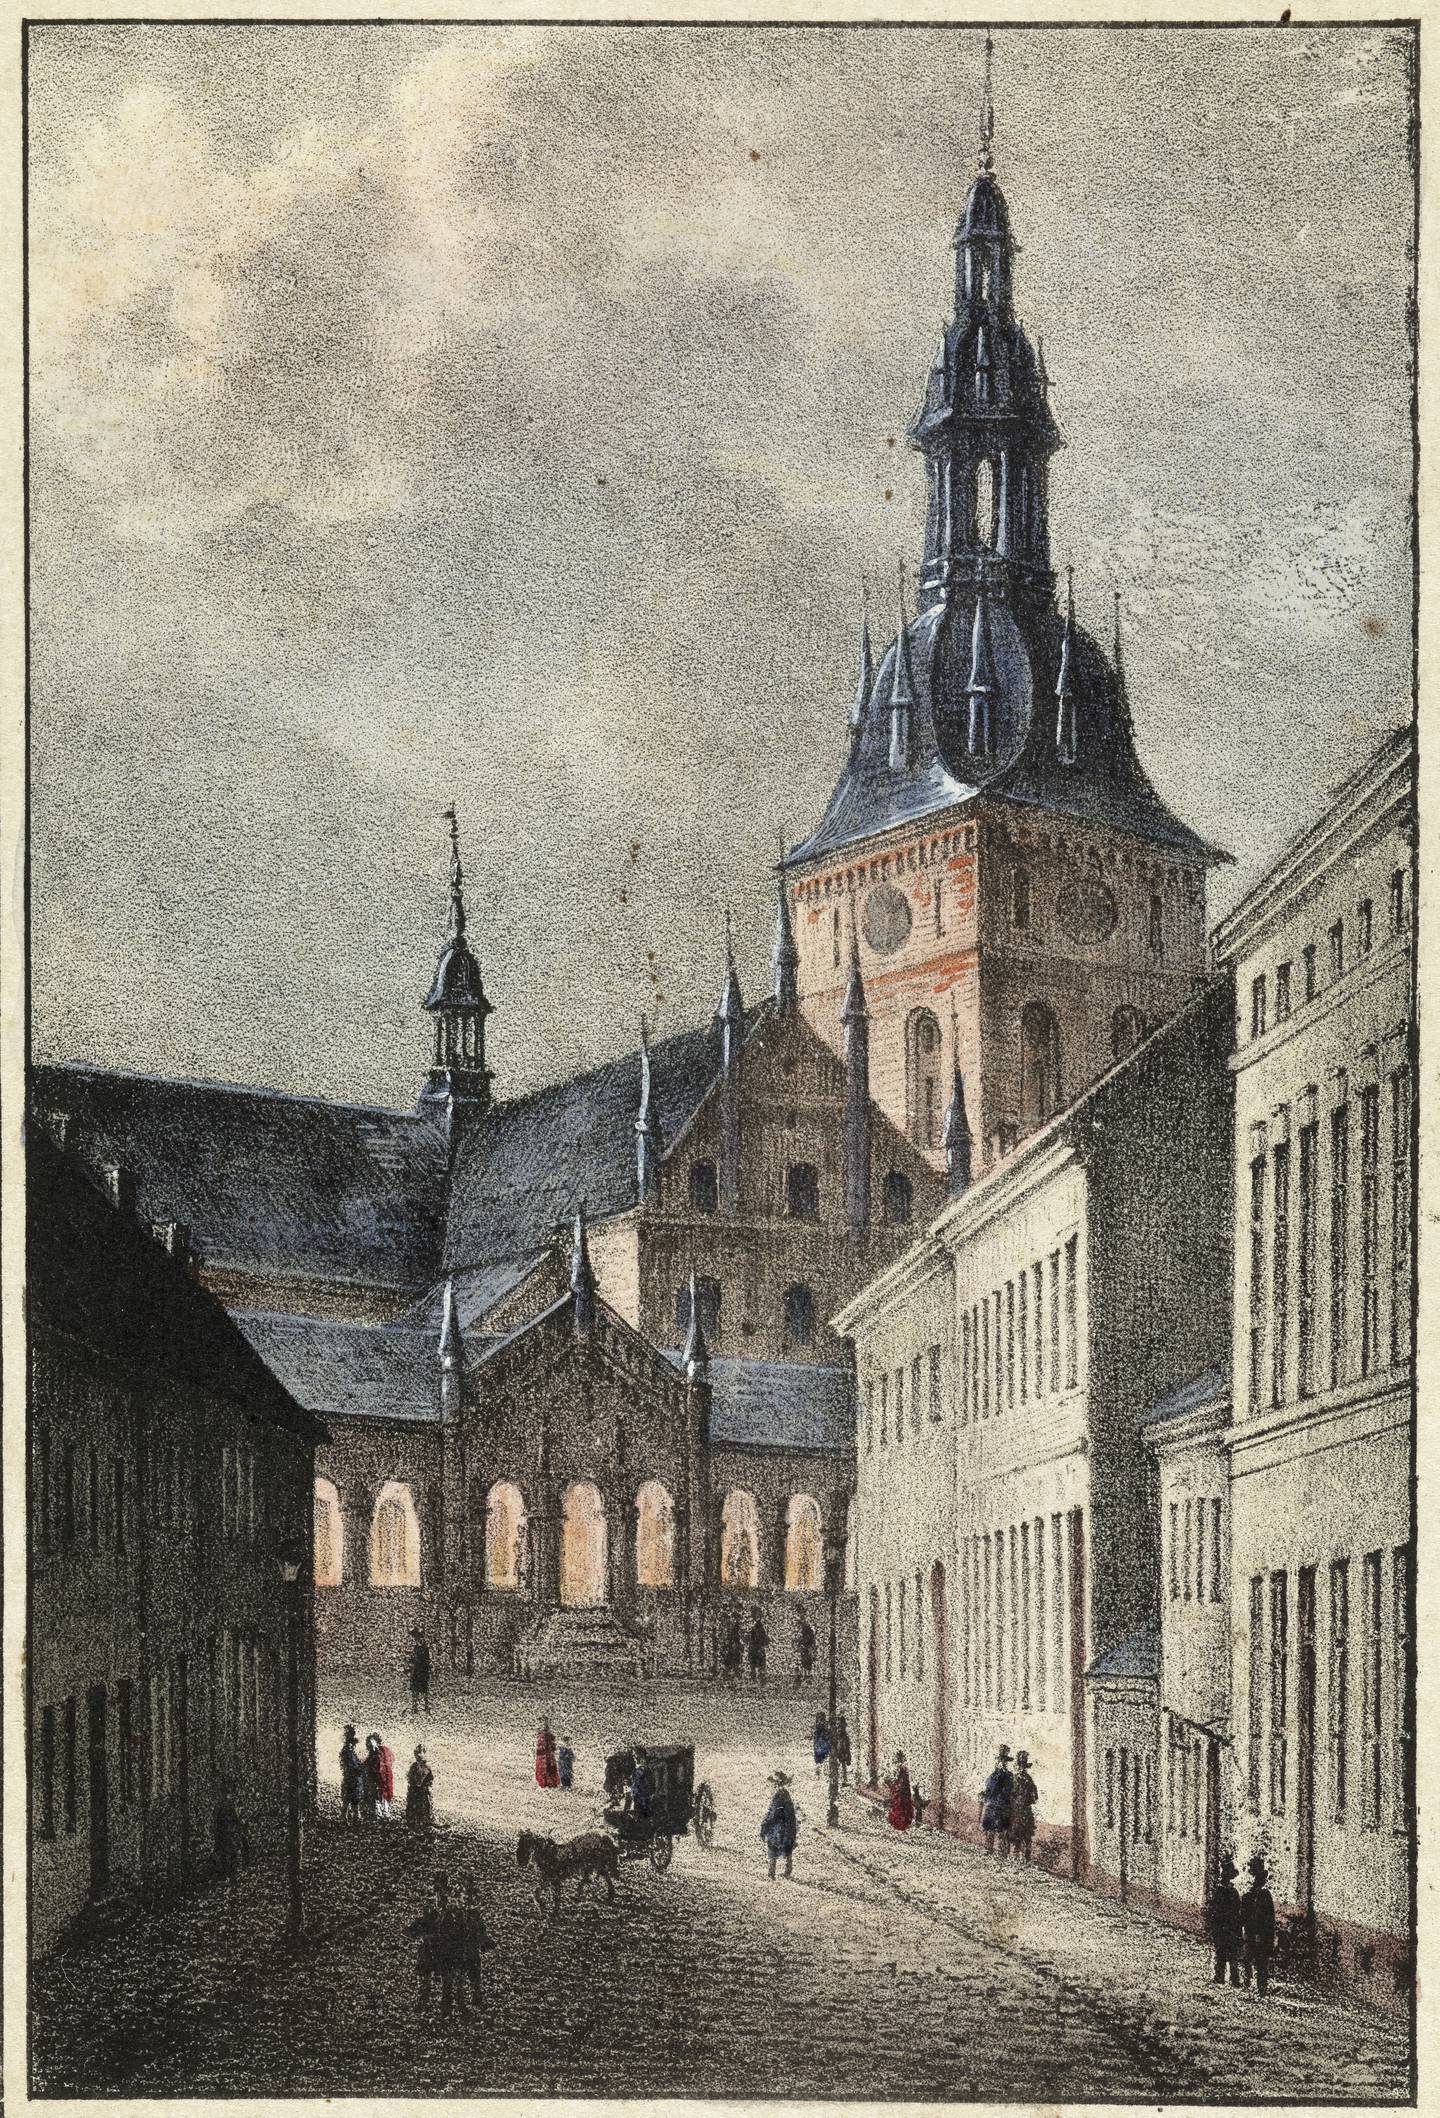 Bazaren og Vår Frelsers kirke slik den så ut etter ombyggingen på 1850-tallet, sett fra Storgata. Kopi etter Joachim Frich.